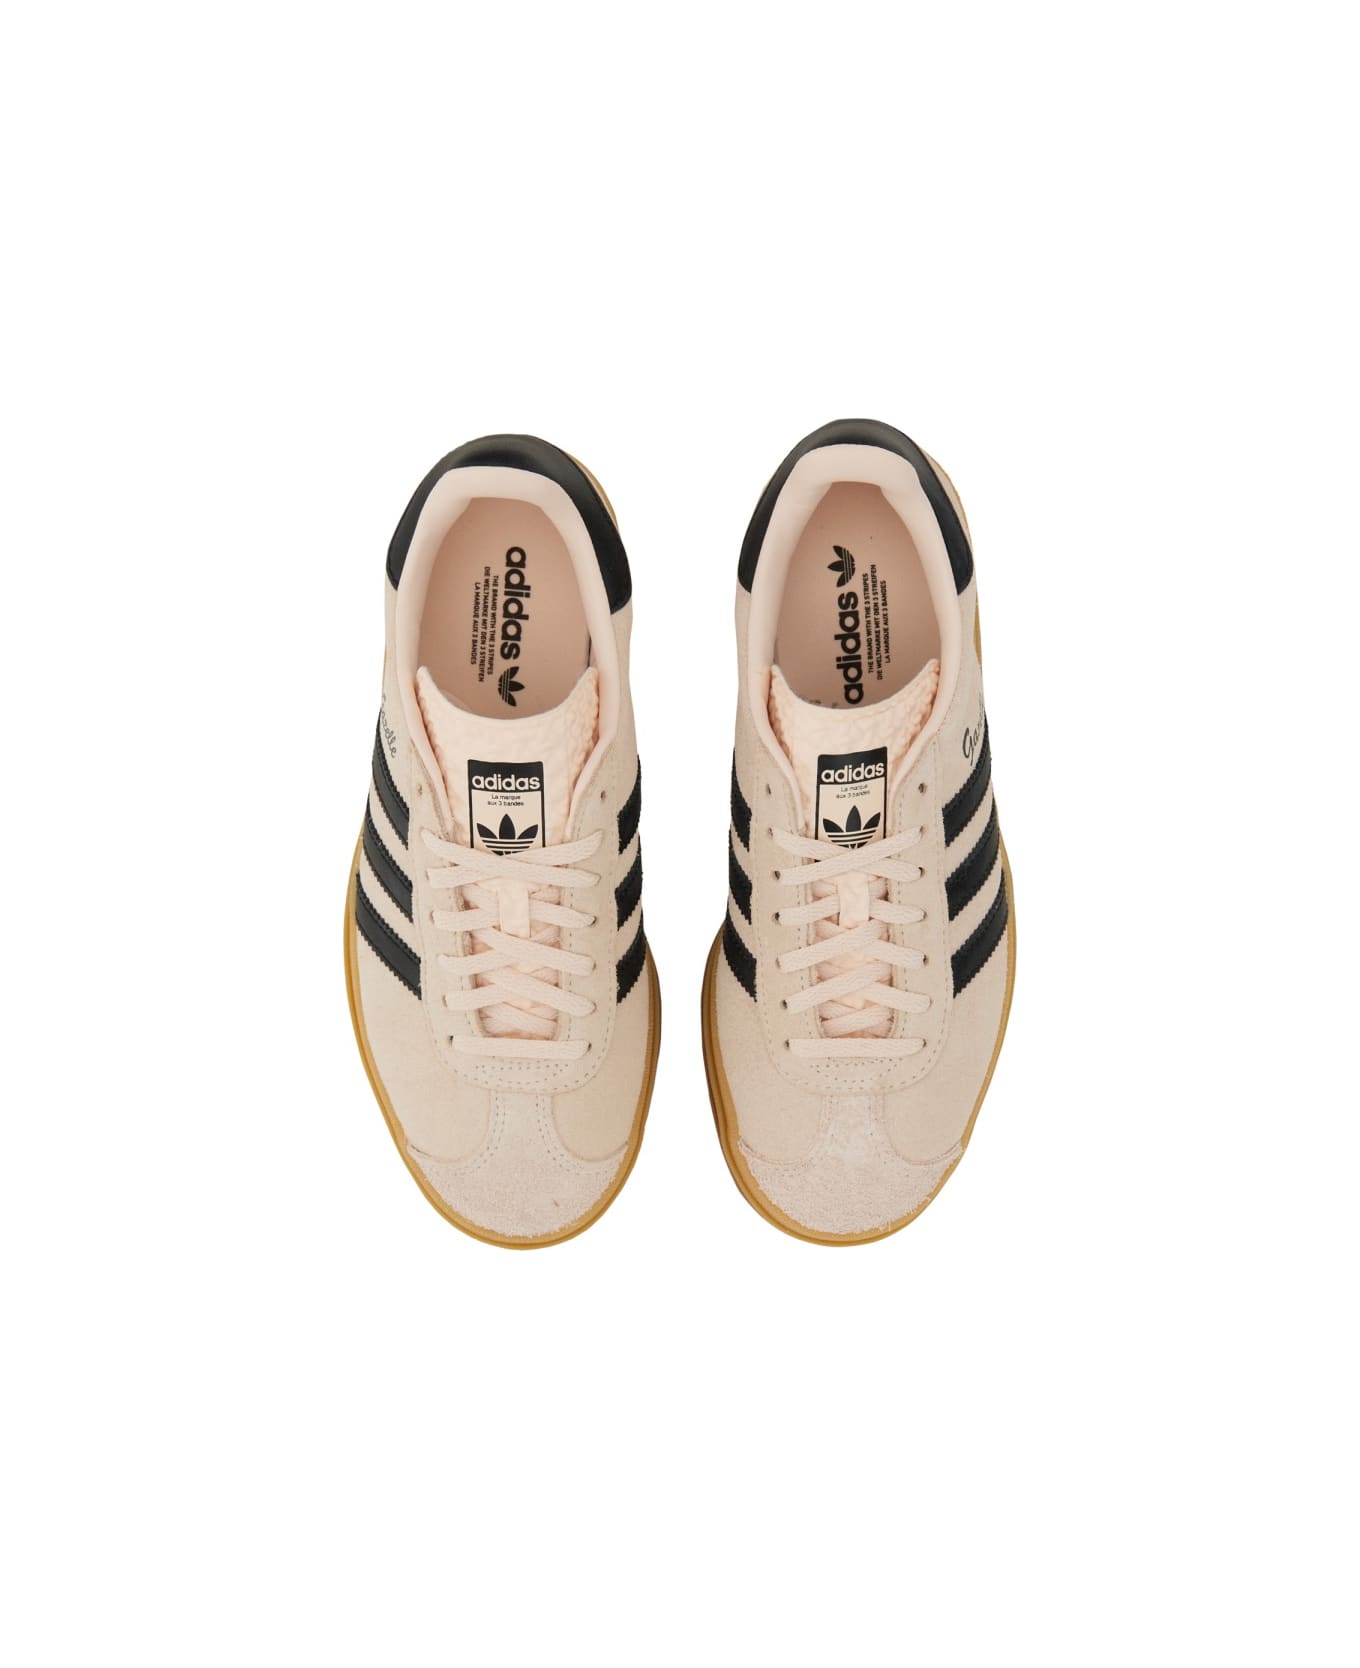 Adidas Originals "gazelle Bold" Sneaker - BEIGE